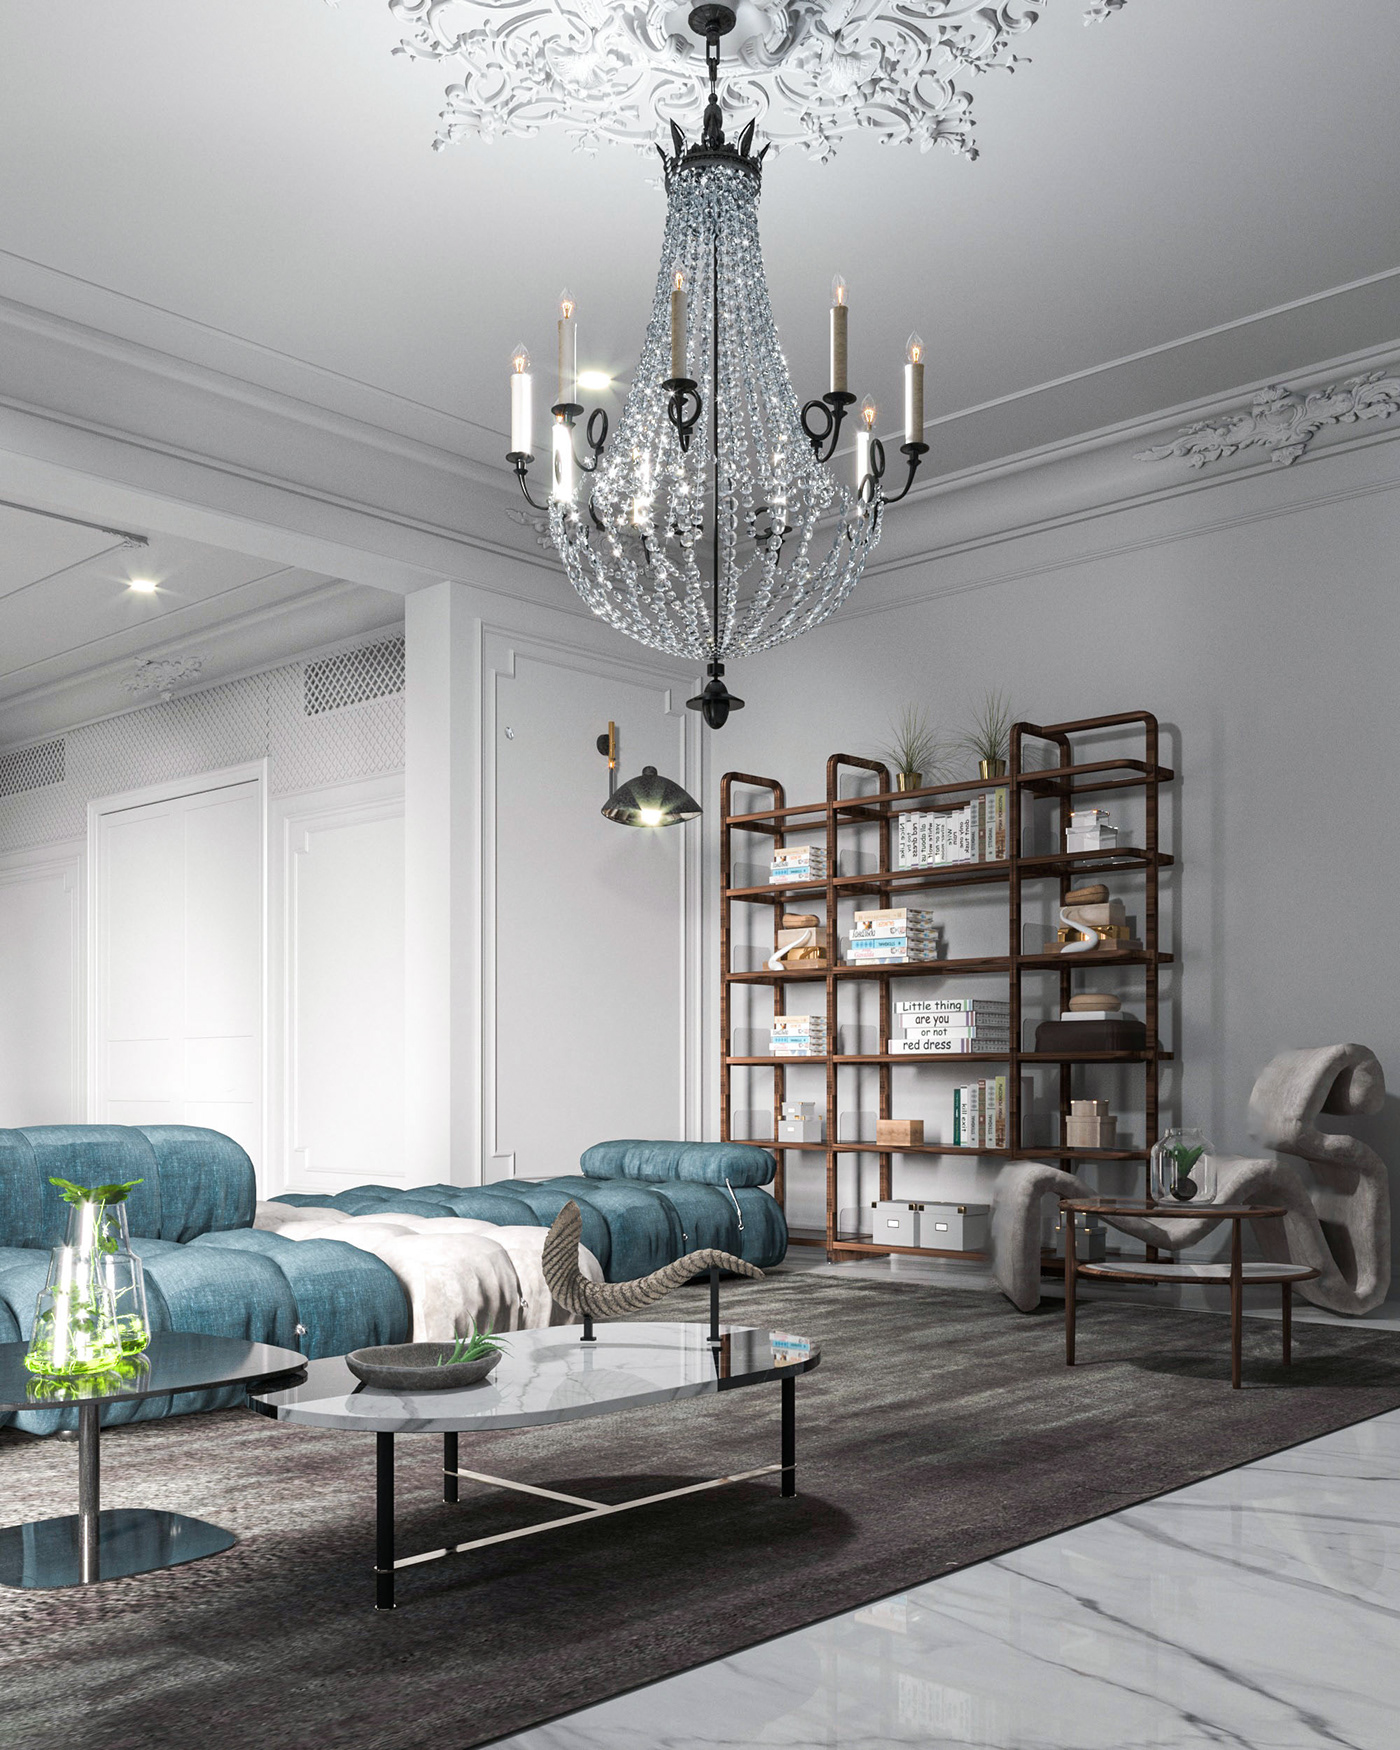 BB Italia Ceccotti design furniture gallotti   living room MAX ALTO modern postmodern villa design